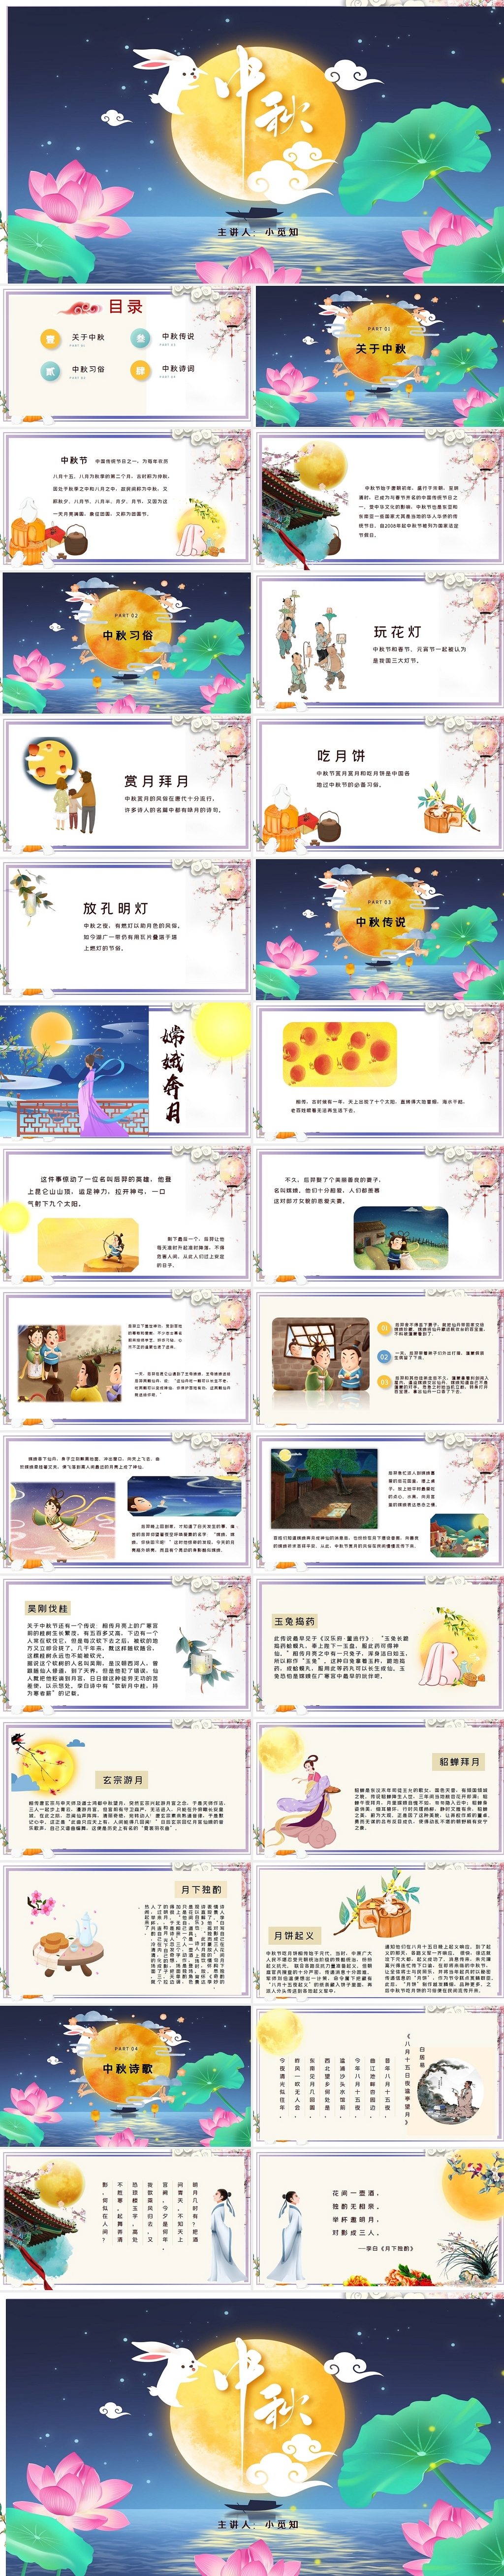 中国传统节日中秋节相关知识介绍主题班会PPT模板